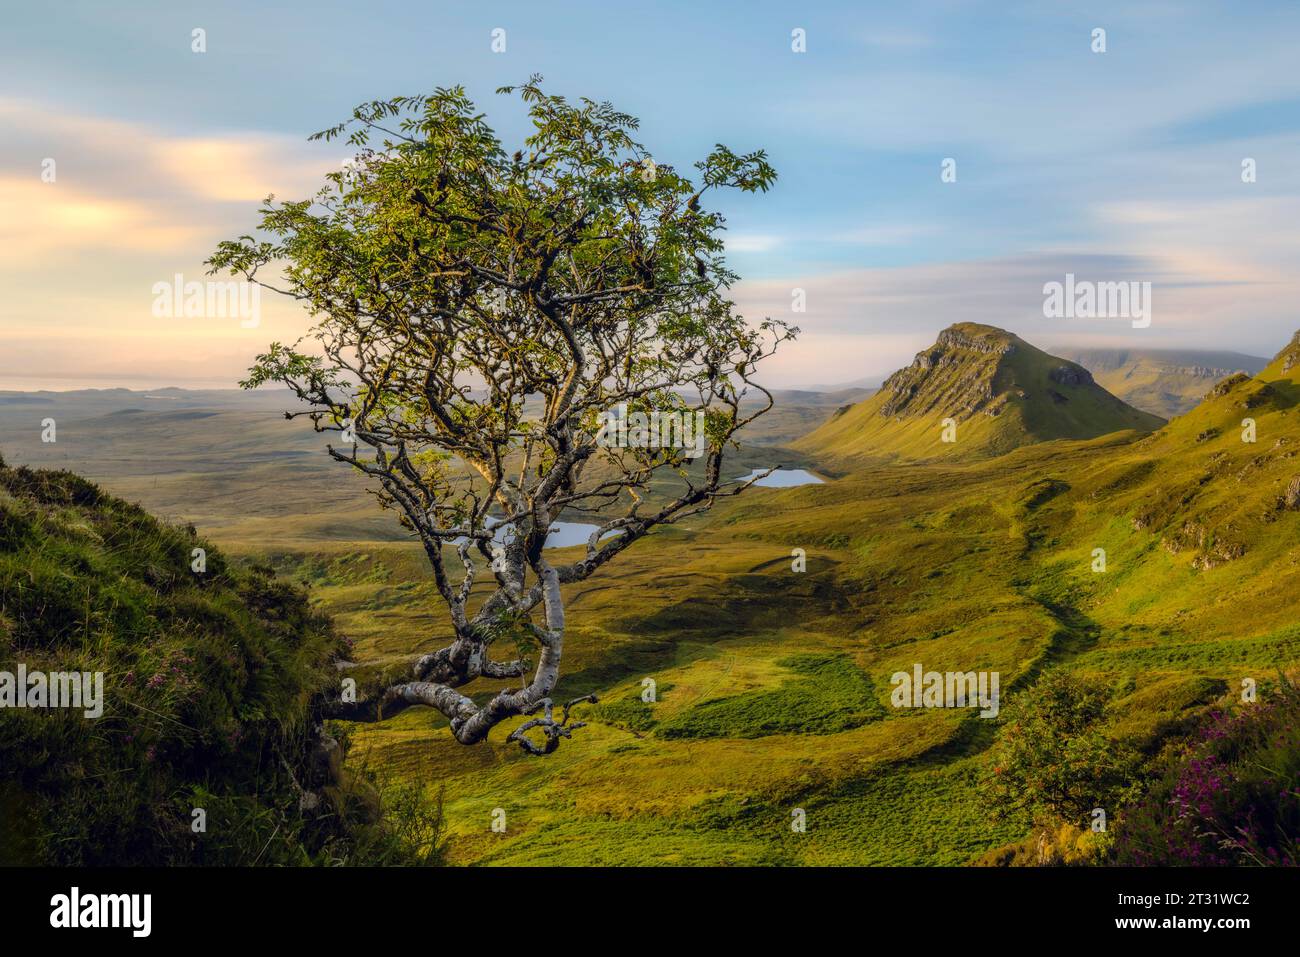 Le Quiraing, sur l'île de Skye, en Écosse, est un plateau de glissement de terrain, formé par une série de glissements de terrain il y a des millions d'années. Banque D'Images